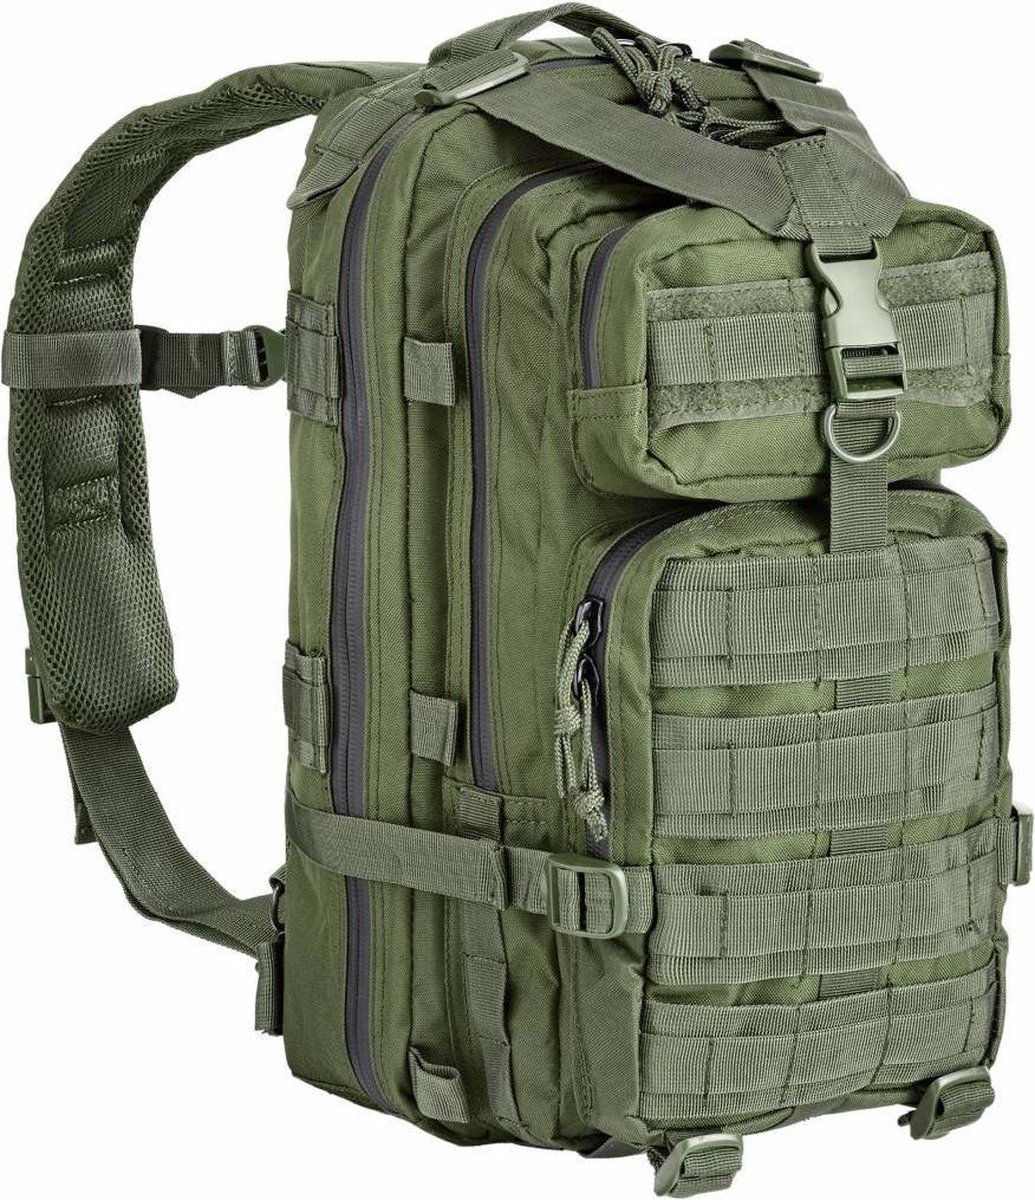 Defcon 5 Tactical Backpack 35l leger rugzak - Olive green